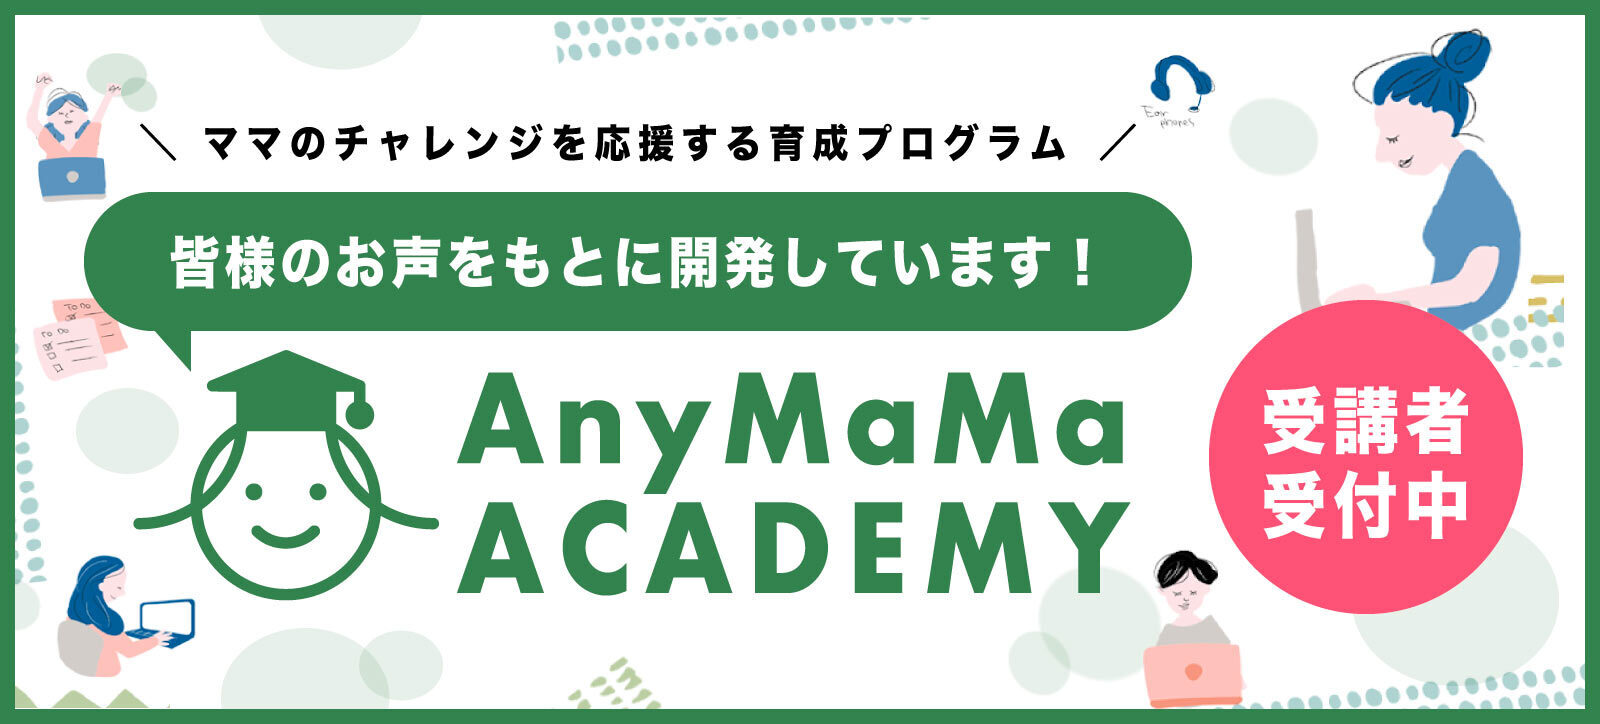 ご登録者のチャレンジを応援する育成プログラム「エニママアカデミー」がスタートしました。